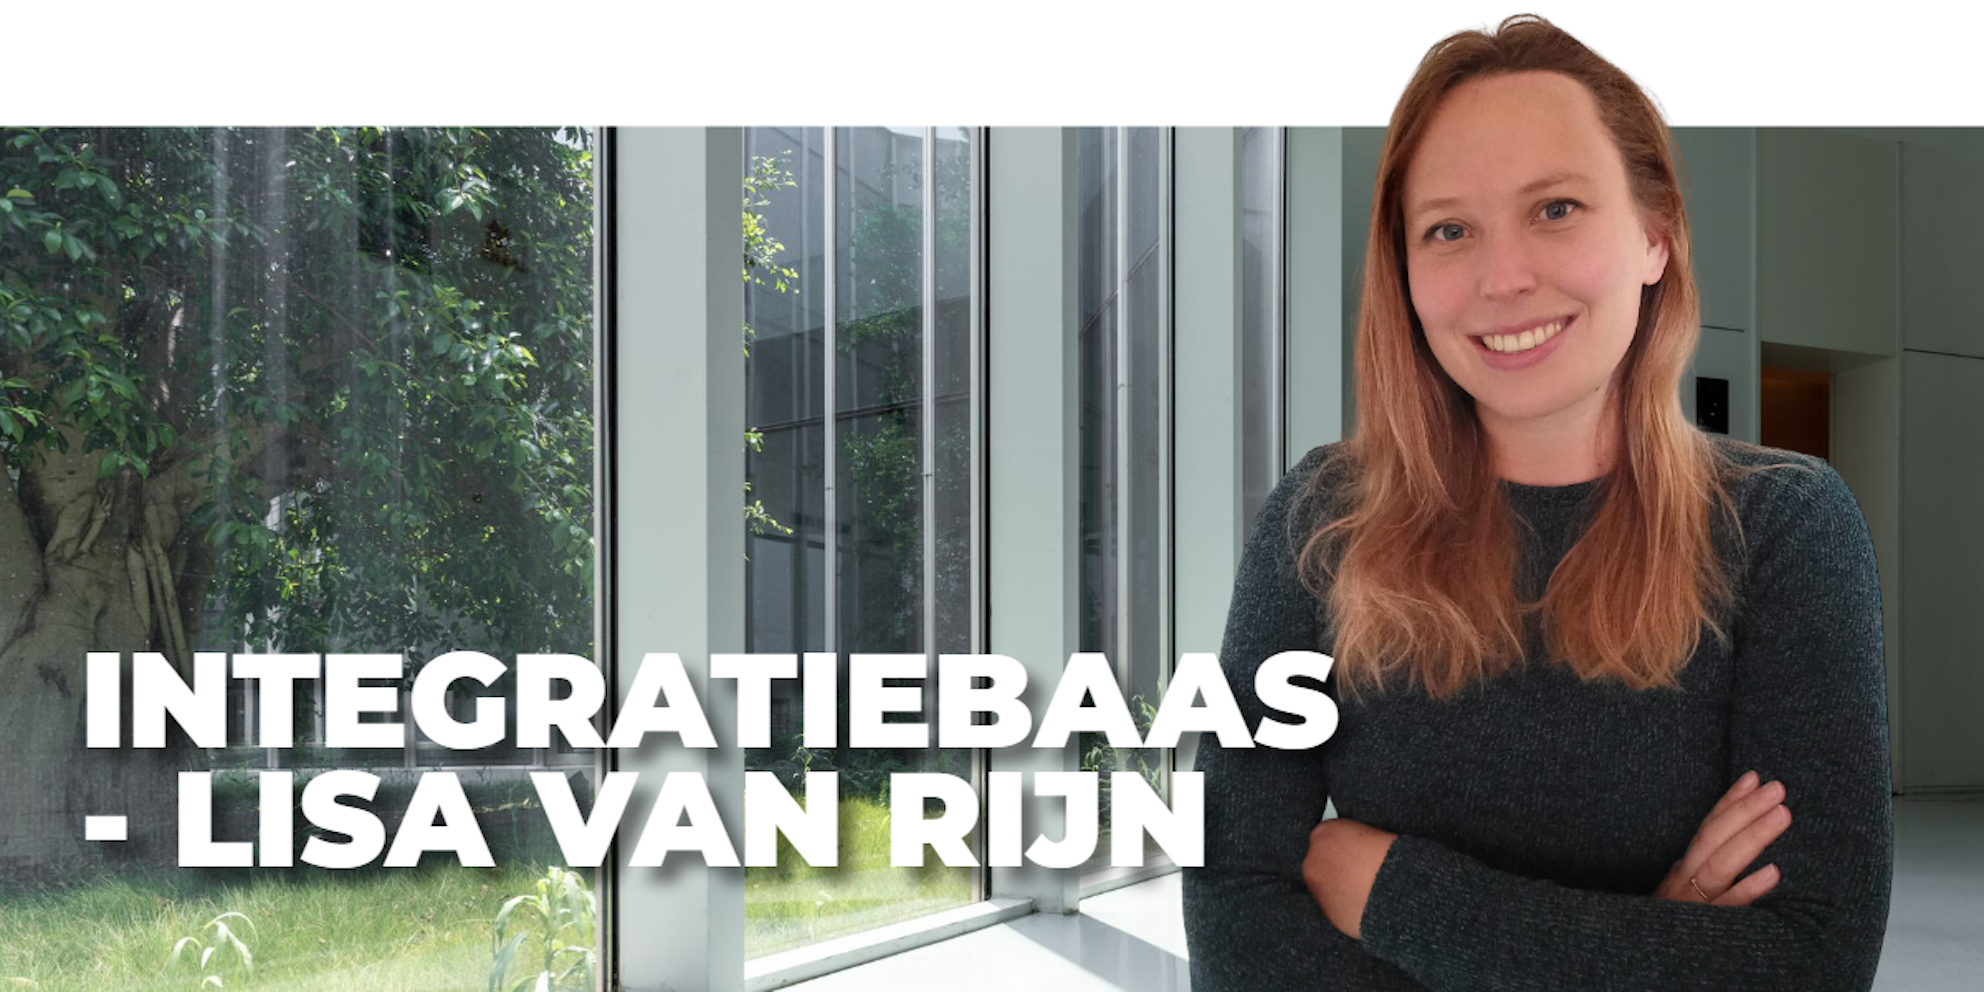 integratiebaas Lisa van Rijn Virtual Sciences Conclusion